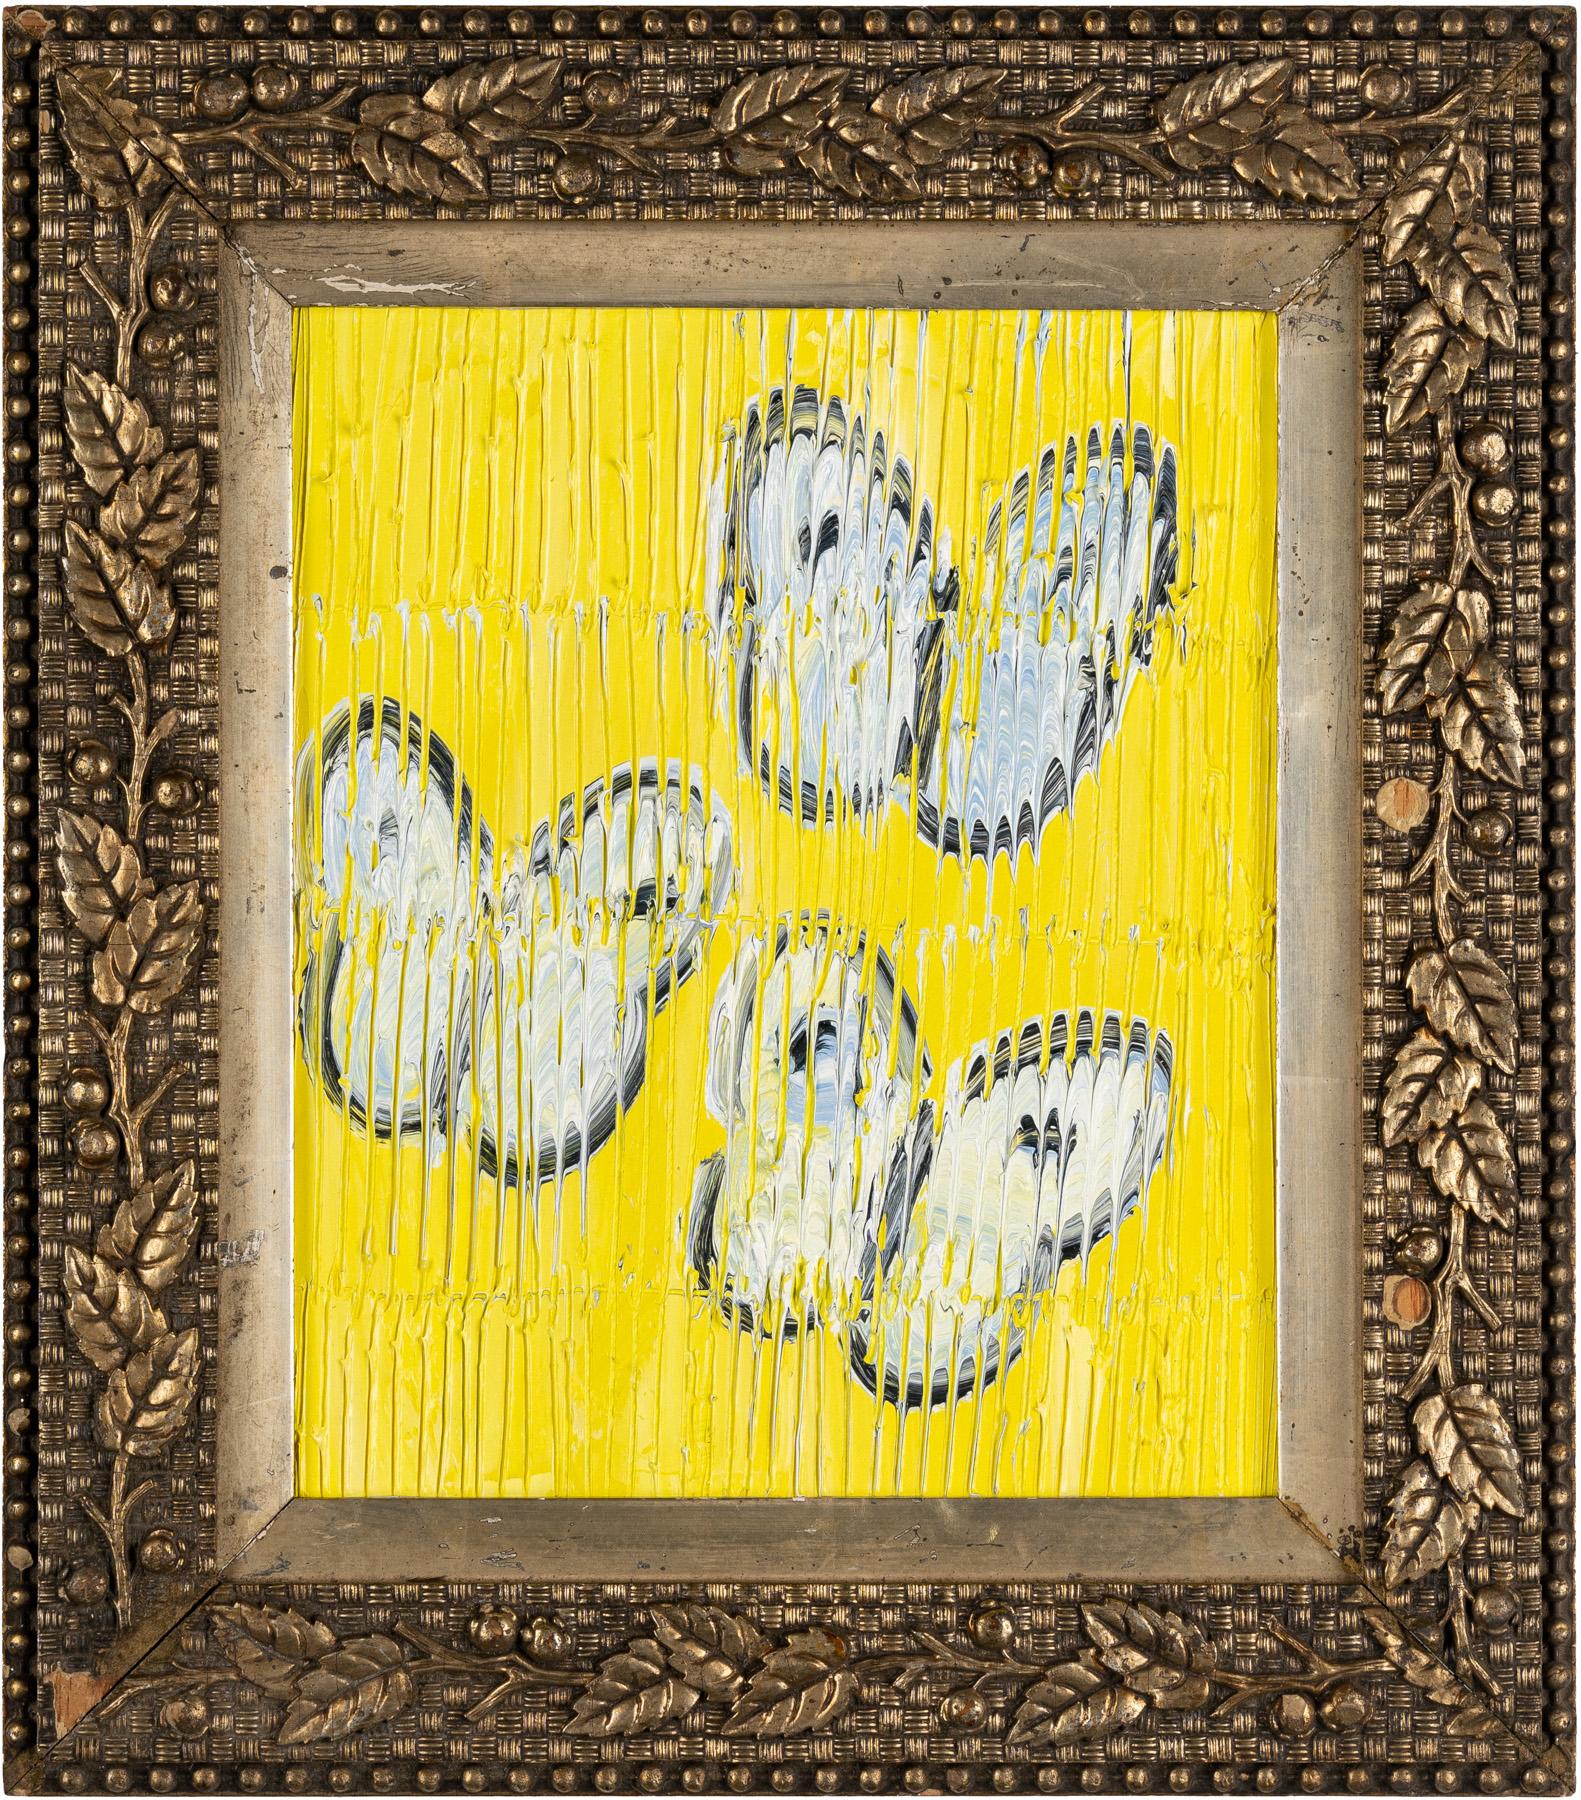 Hunt Slonem "3 Flights" Weiße Schmetterlinge auf Gelb
Schwarz umrandete weiße Schmetterlinge auf gelbem, geätztem Hintergrund in einem antiken Rahmen.

Ungerahmt: 12,5 x 10,5 Zoll
Gerahmt: 17,5 x 15,5 Zoll
*Gemälde ist gerahmt - Bitte beachten Sie